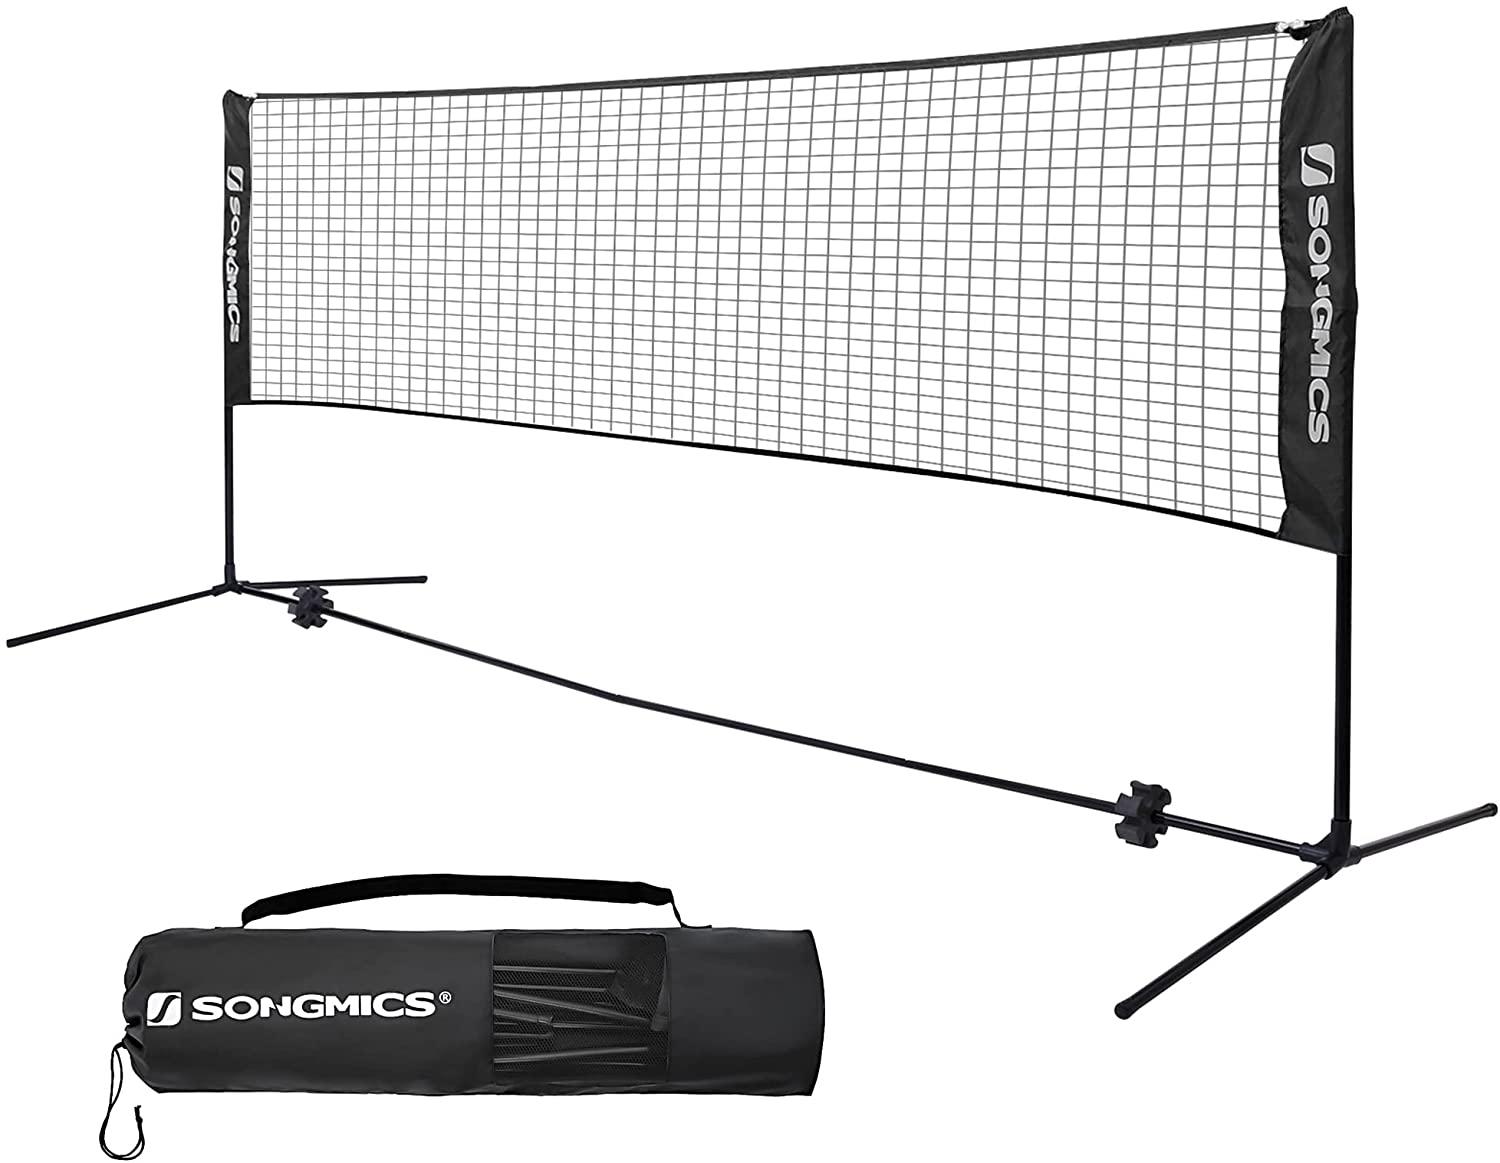  Portable Indoor Outdoor Badminton Net Sets for $21.49